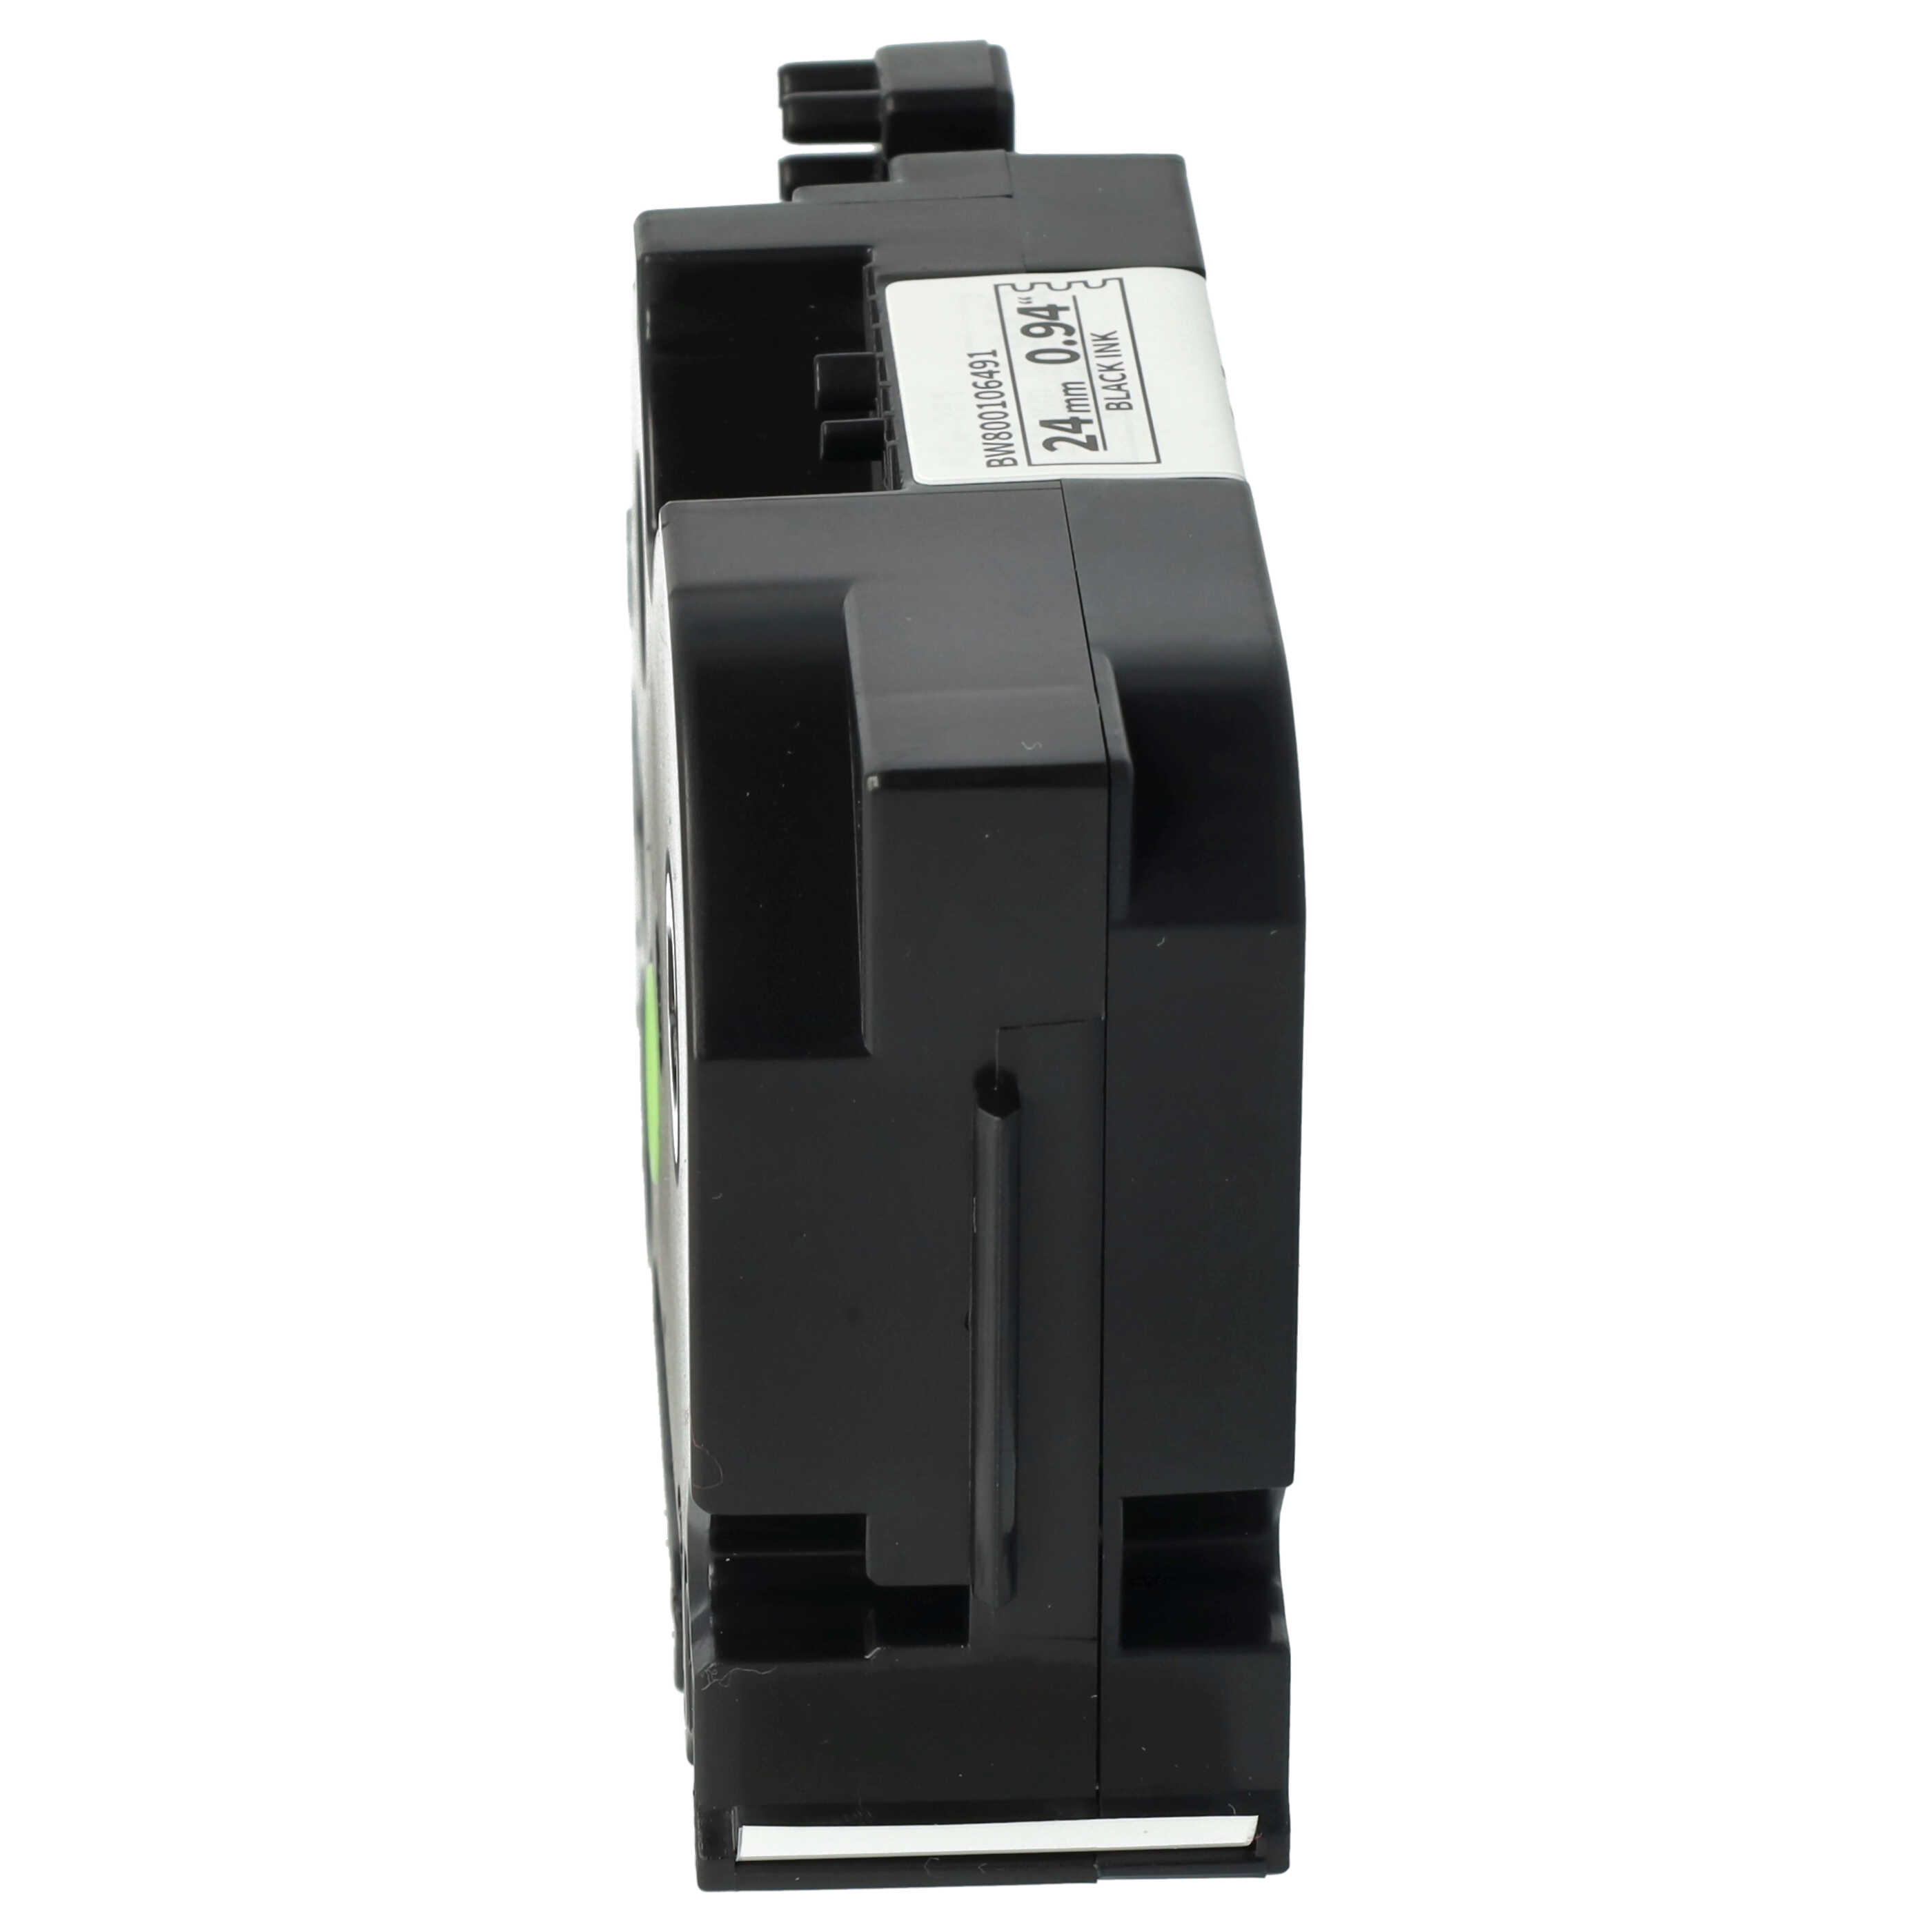 5x Cassetta nastro sostituisce Brother TZE-251, TZ-251 per etichettatrice Brother 24mm nero su bianco